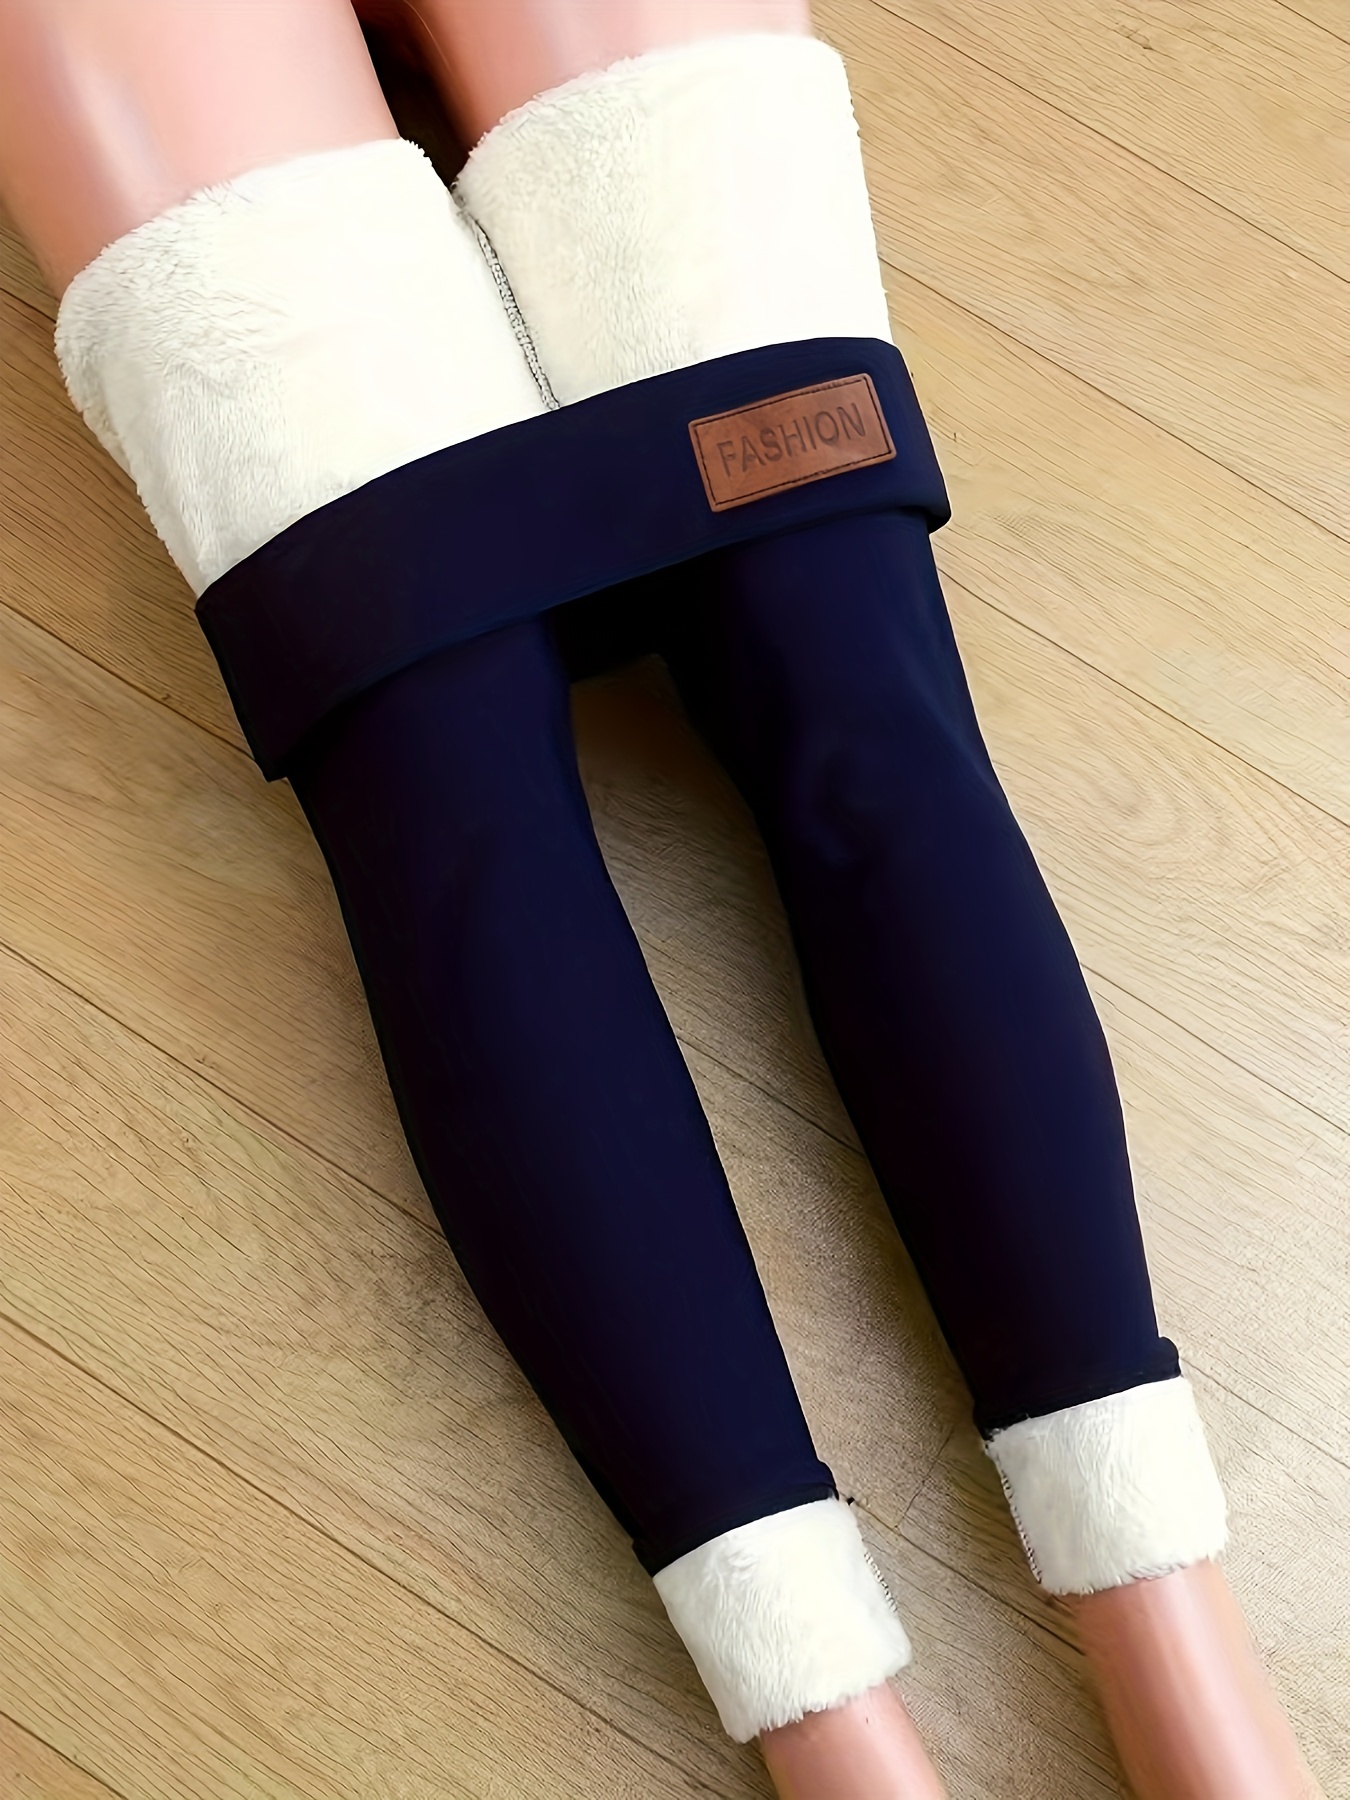 HSMQHJWE Skeleton Leggings For Women Winter Cute Clothes For Women